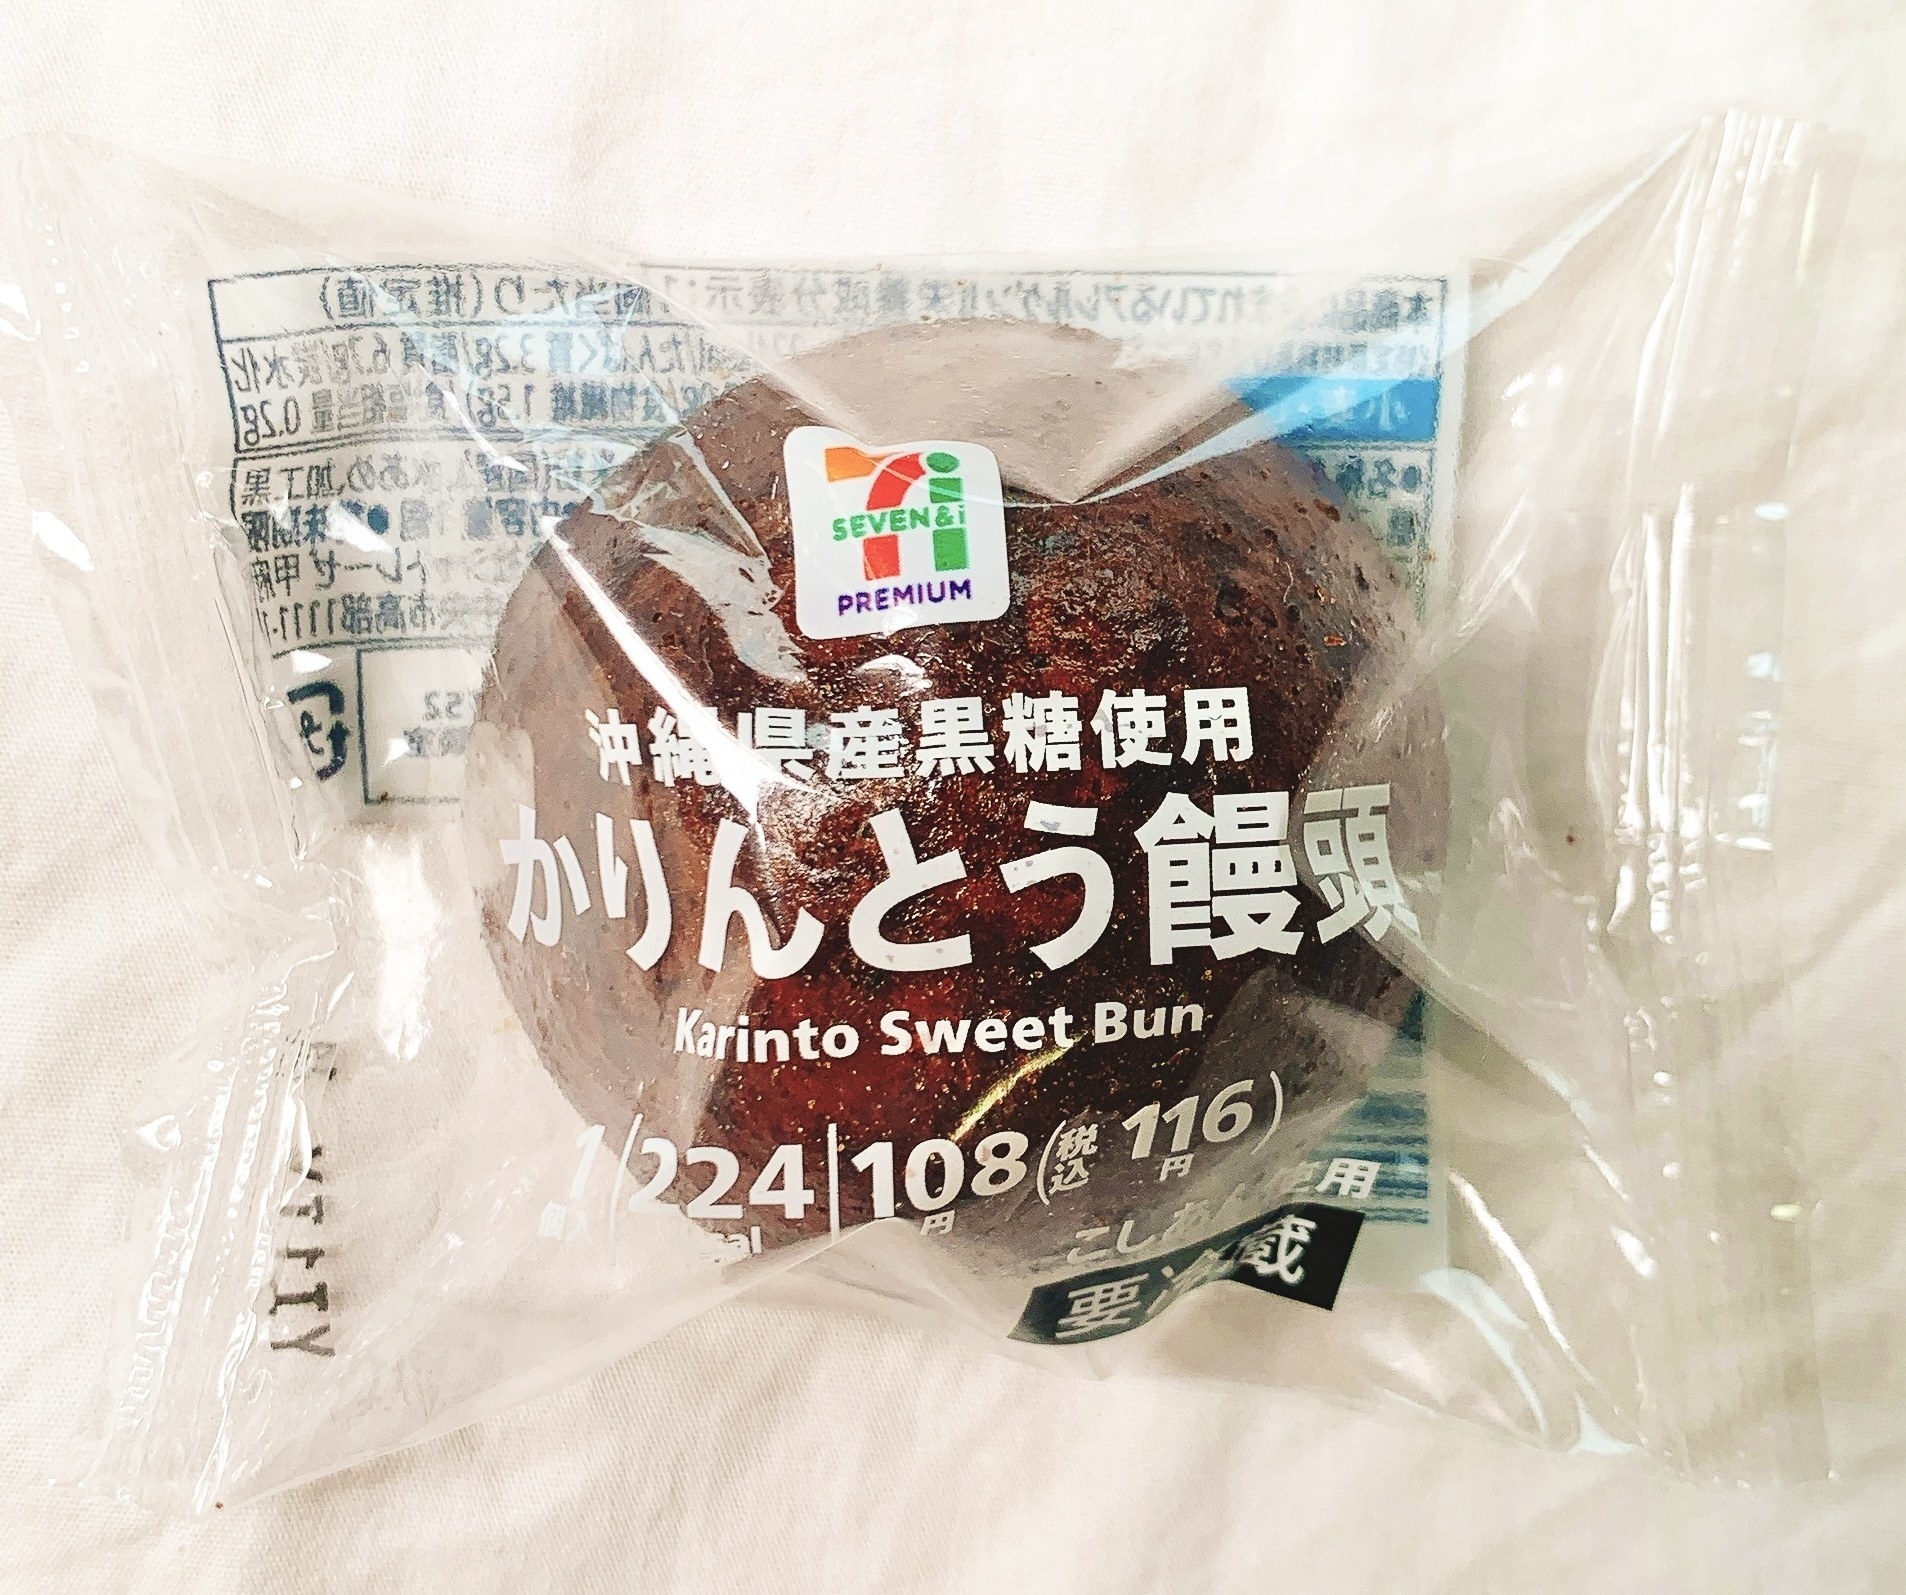 セブンイレブン「かりんとう饅頭」は沖縄県産黒糖を使用したおいしいおすすめ和スイーツです